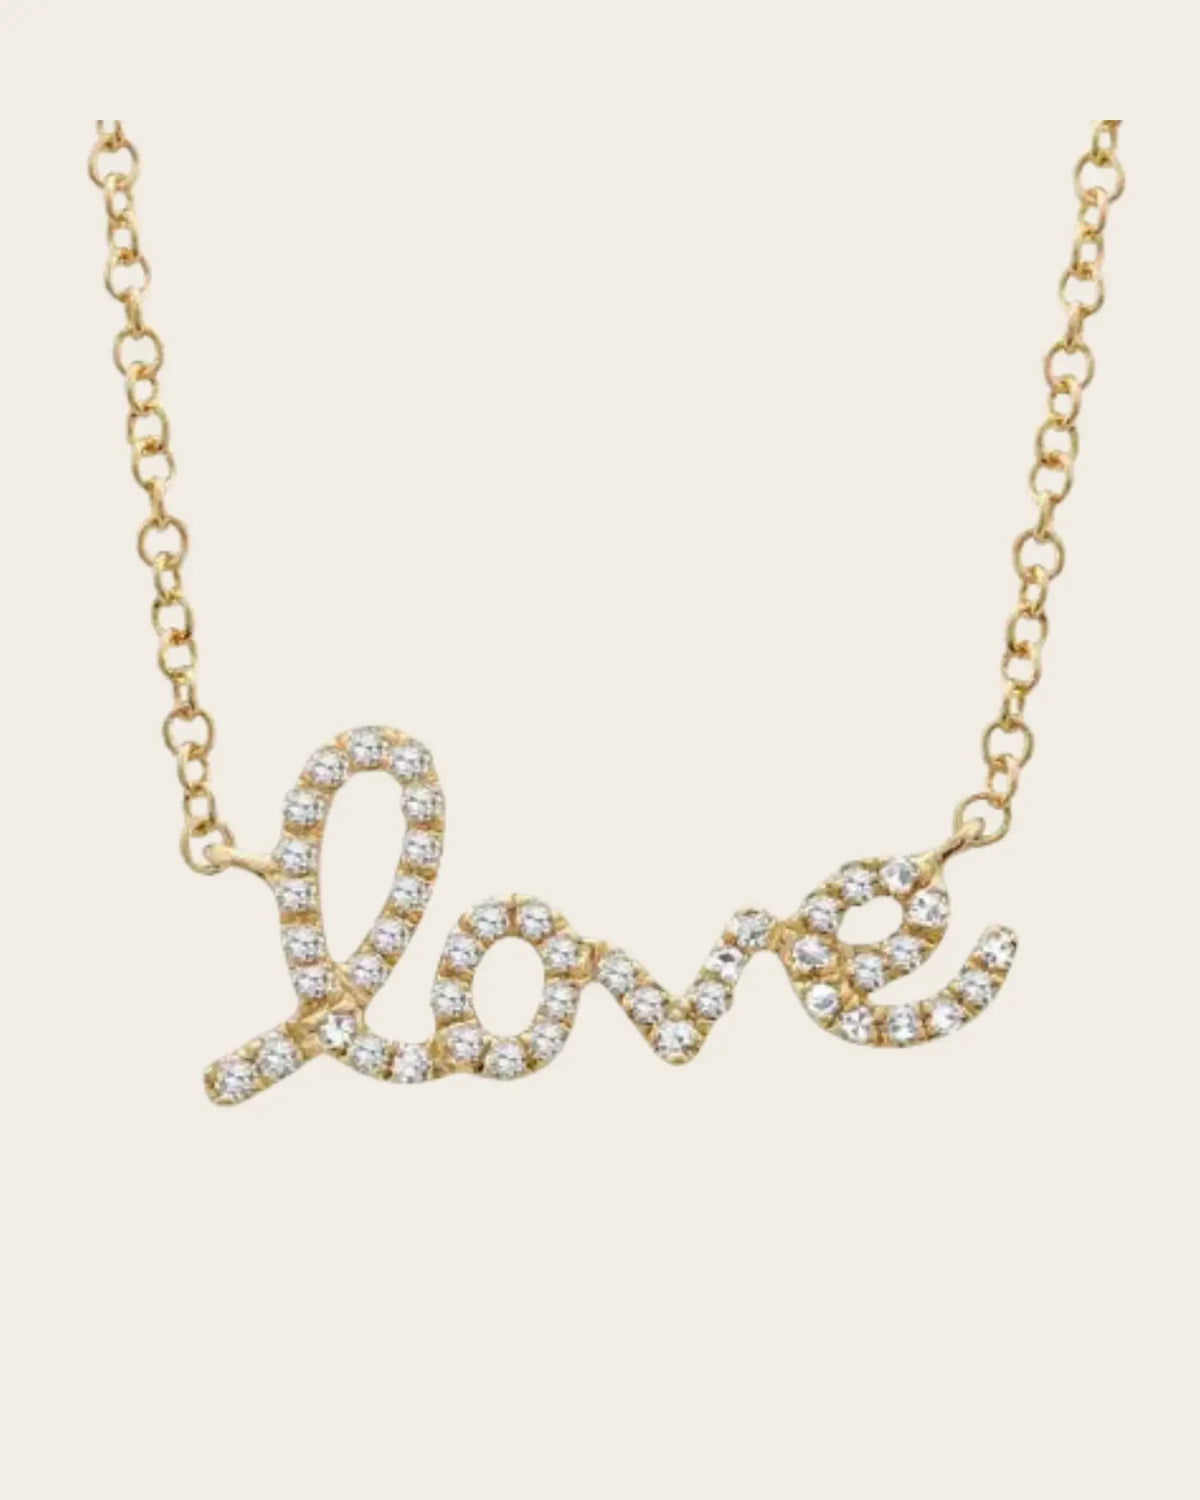 Diamond &quot;Love&quot; Necklace Diamond &quot;Love&quot; Necklace Squash Blossom Original Squash Blossom Original  Squash Blossom Vail